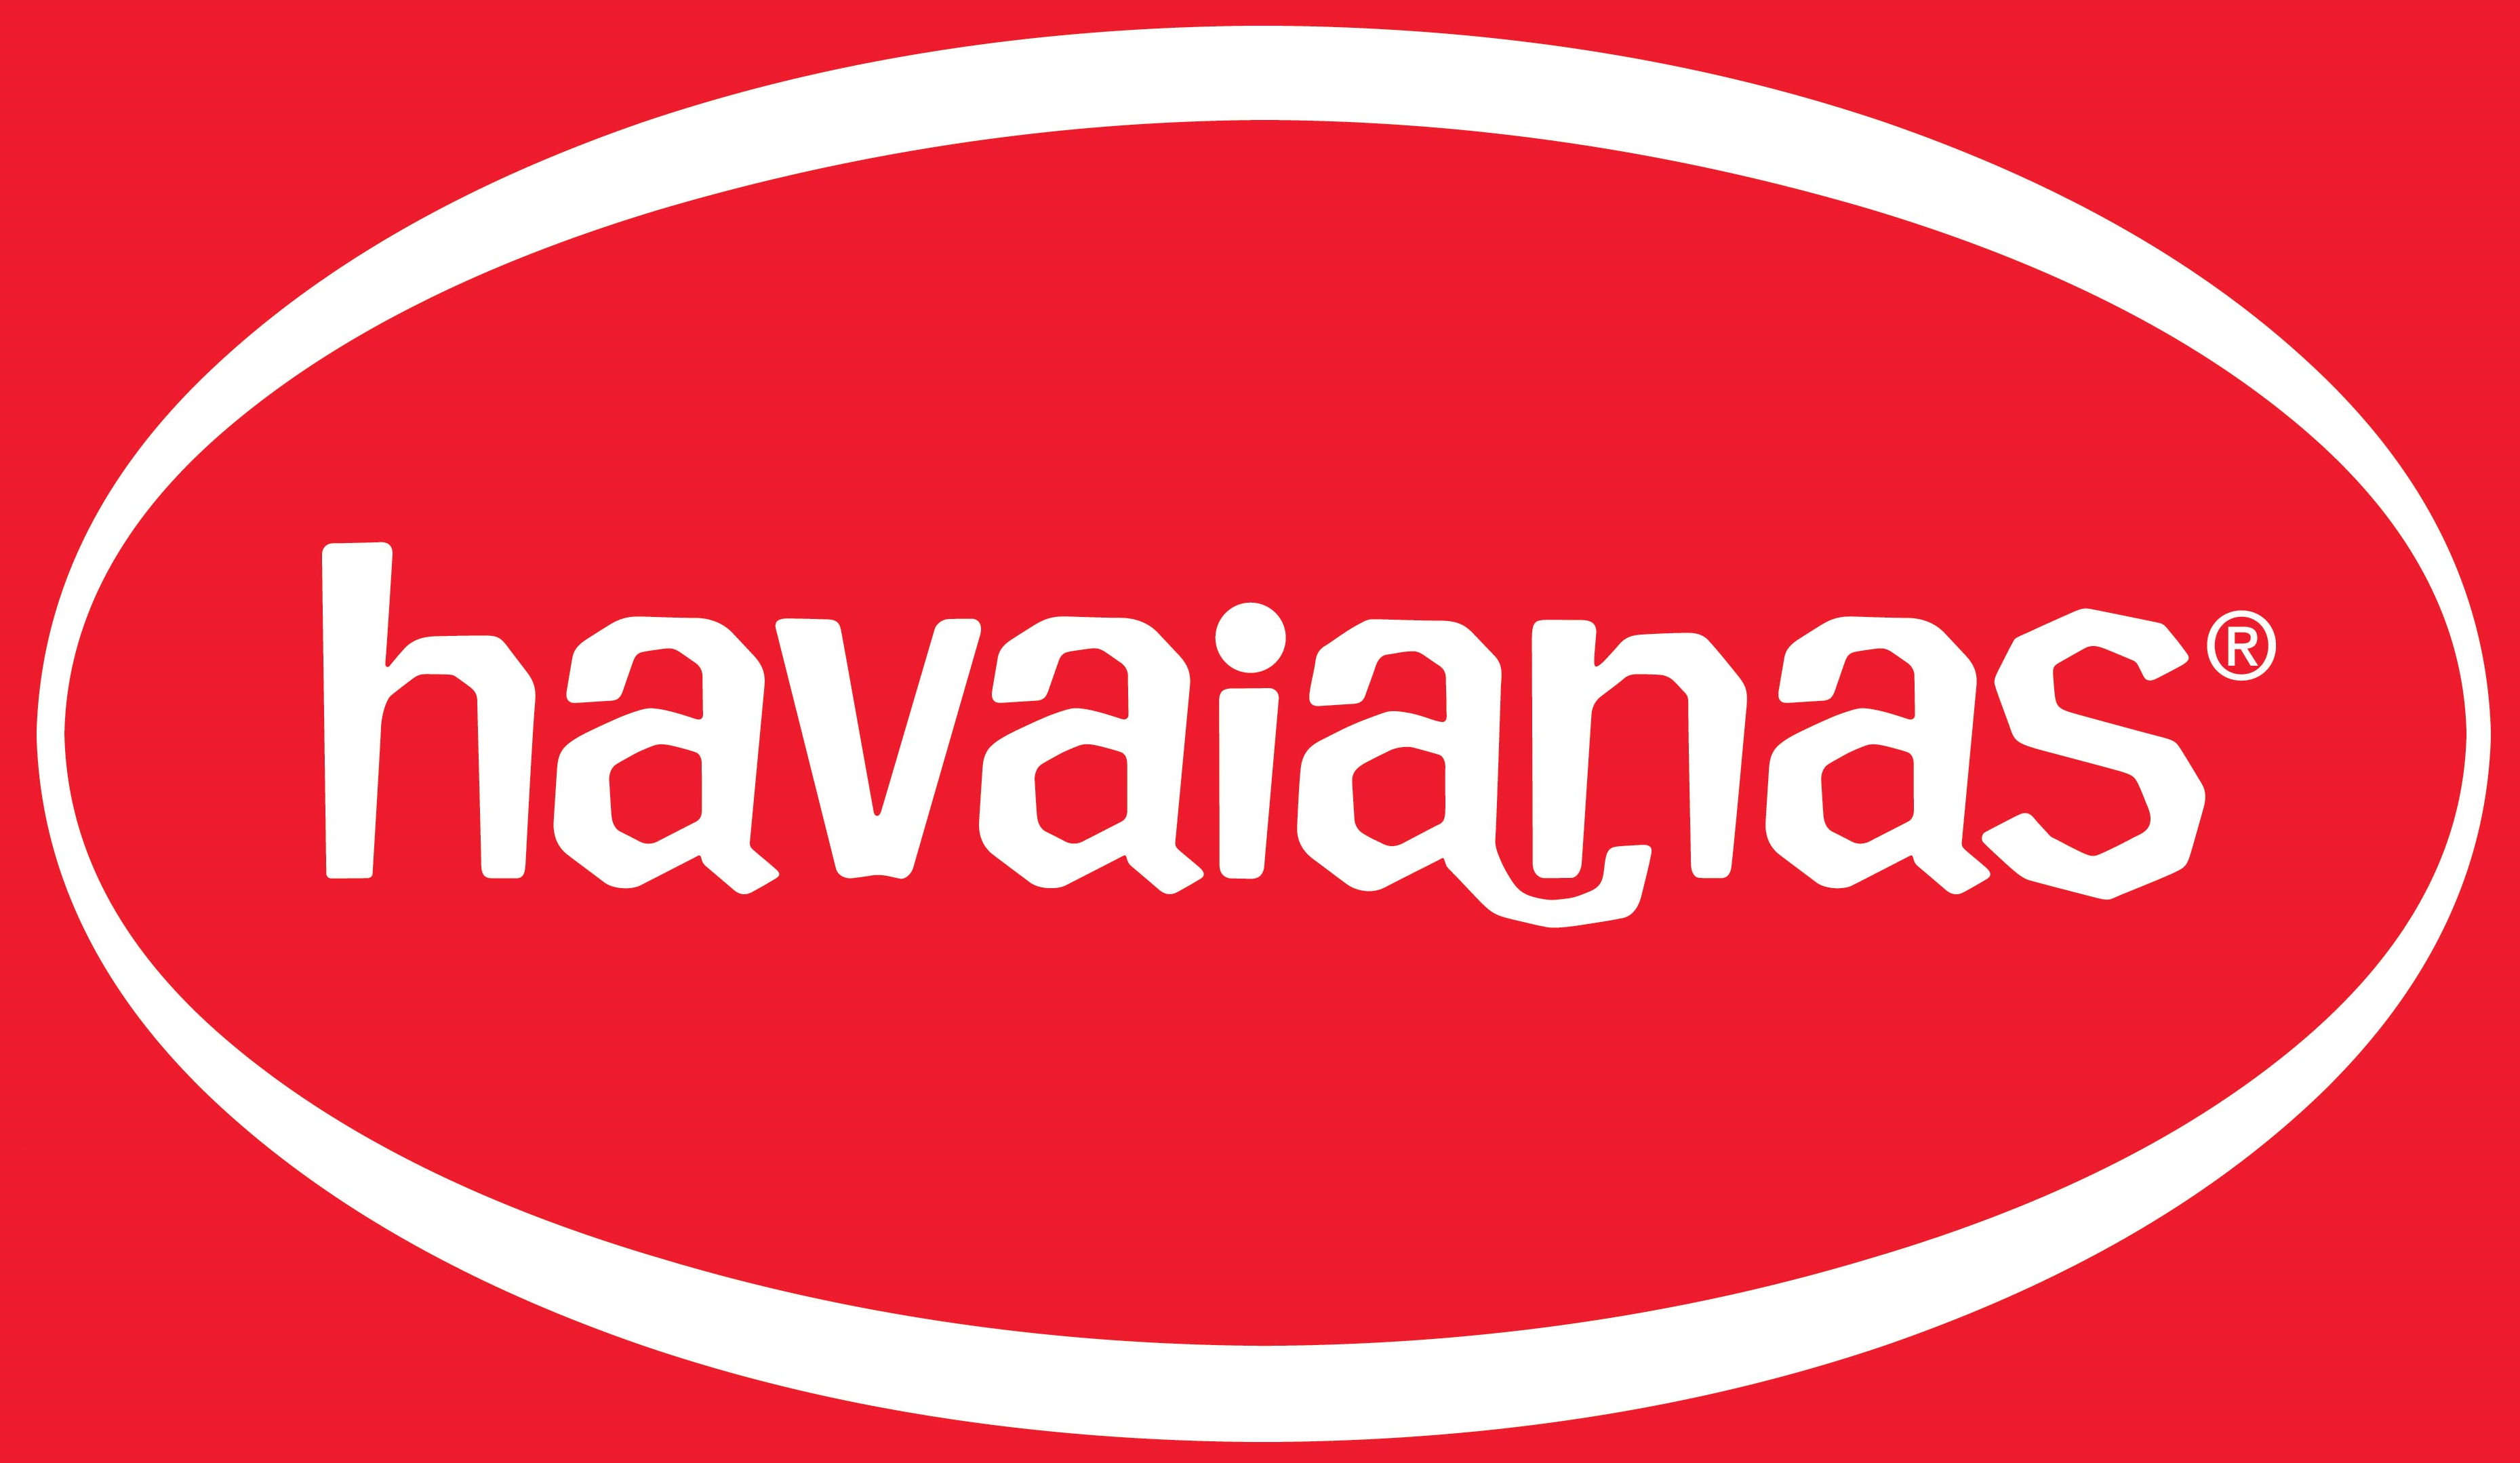 Havaianas Brand Logo